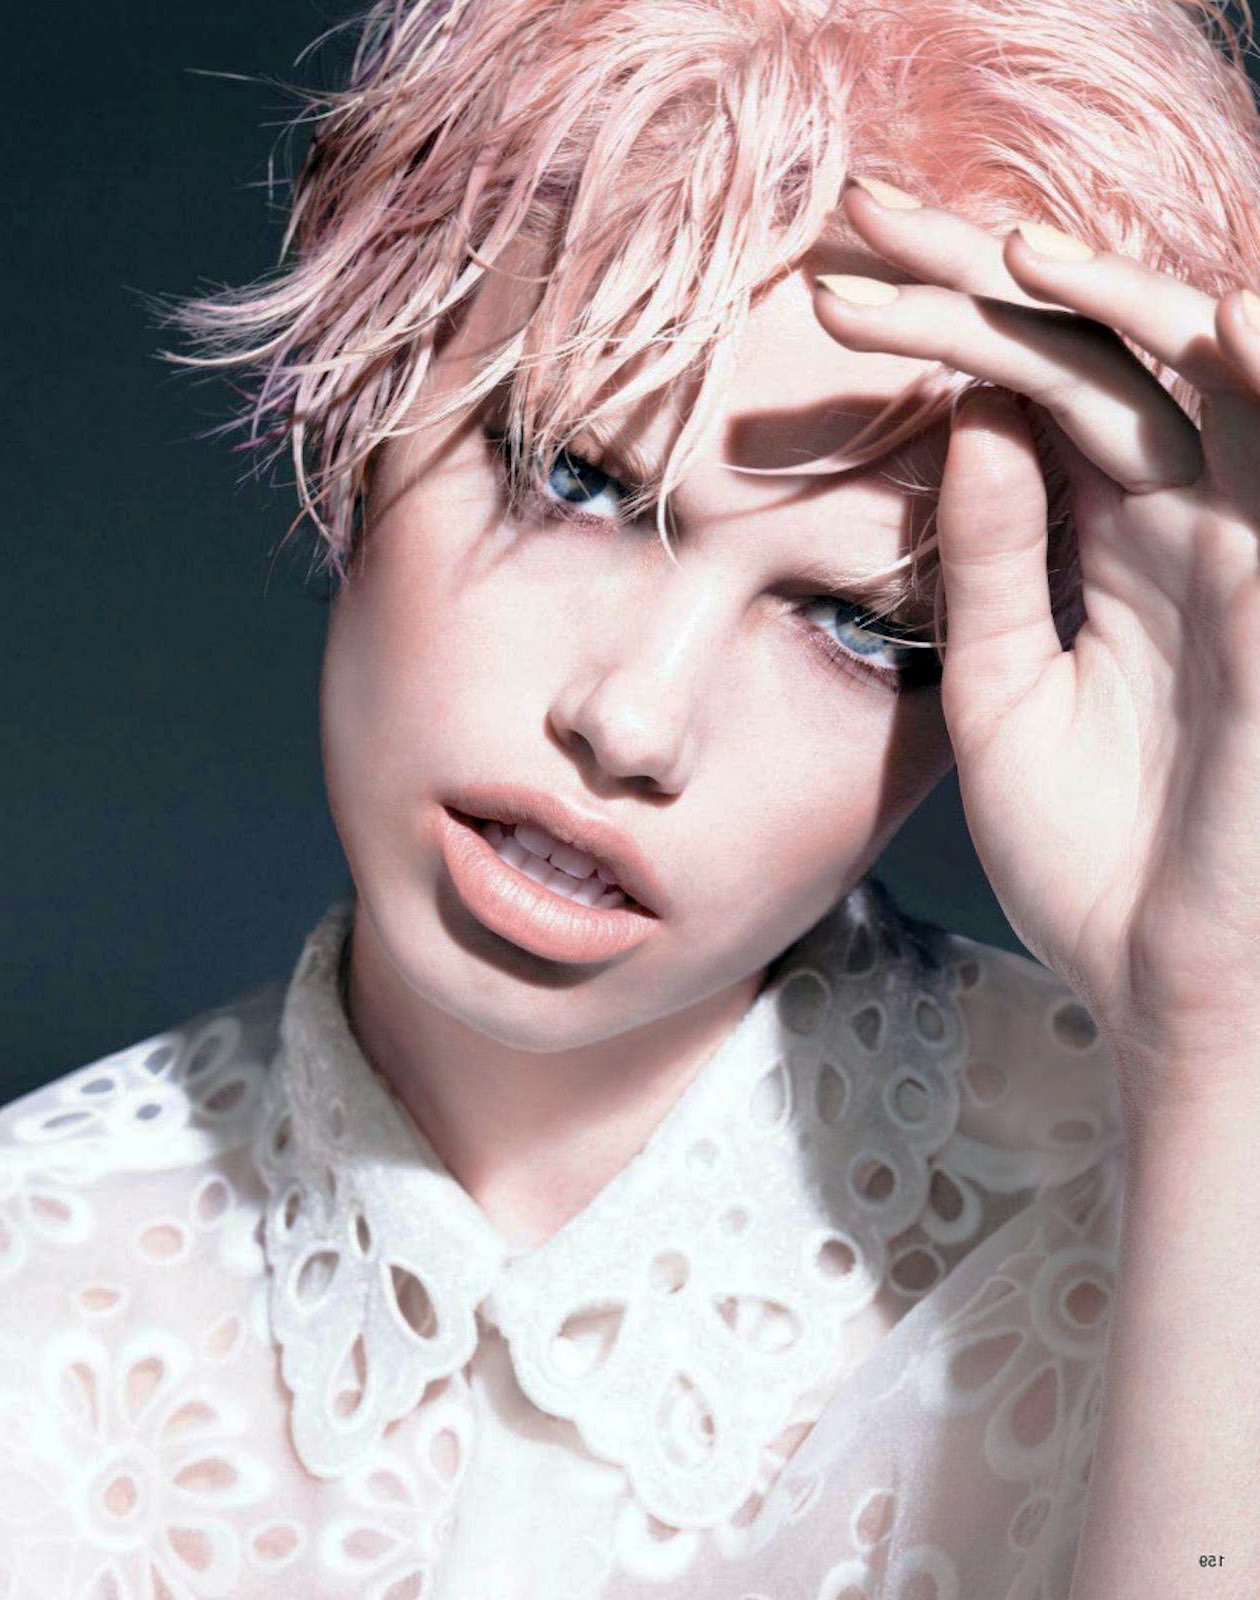 le nuage sauvage - niteostyle: Vogue Japan (Beauty) February 2012...